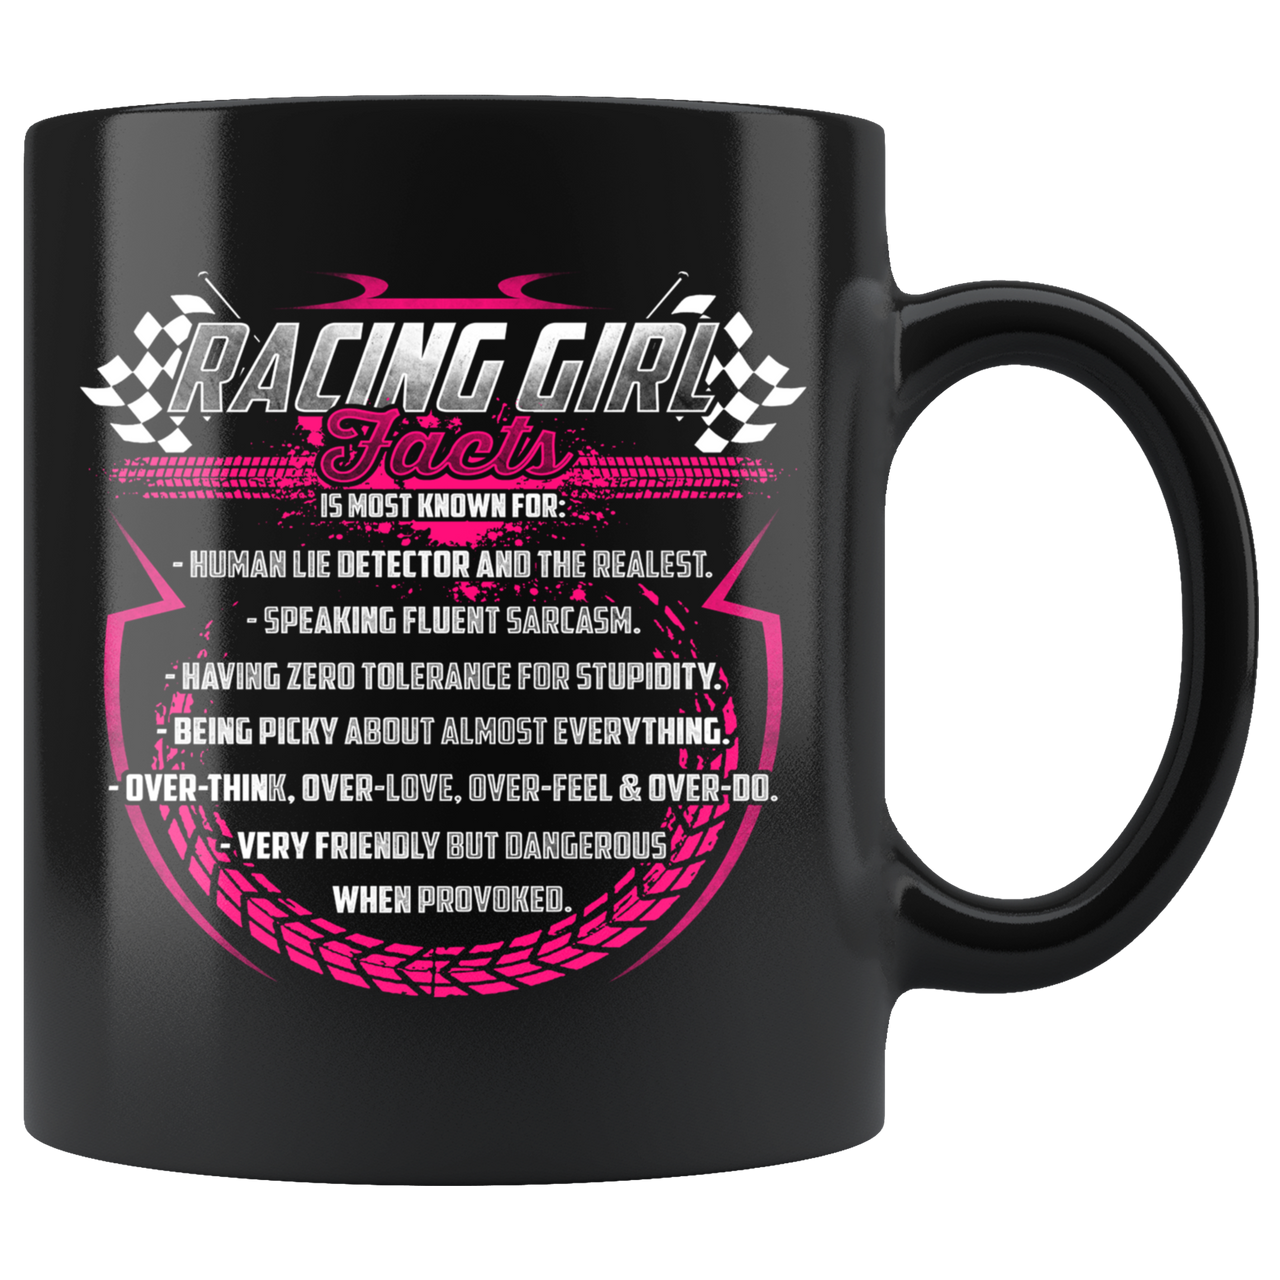 Racing Girl Facts Mug!